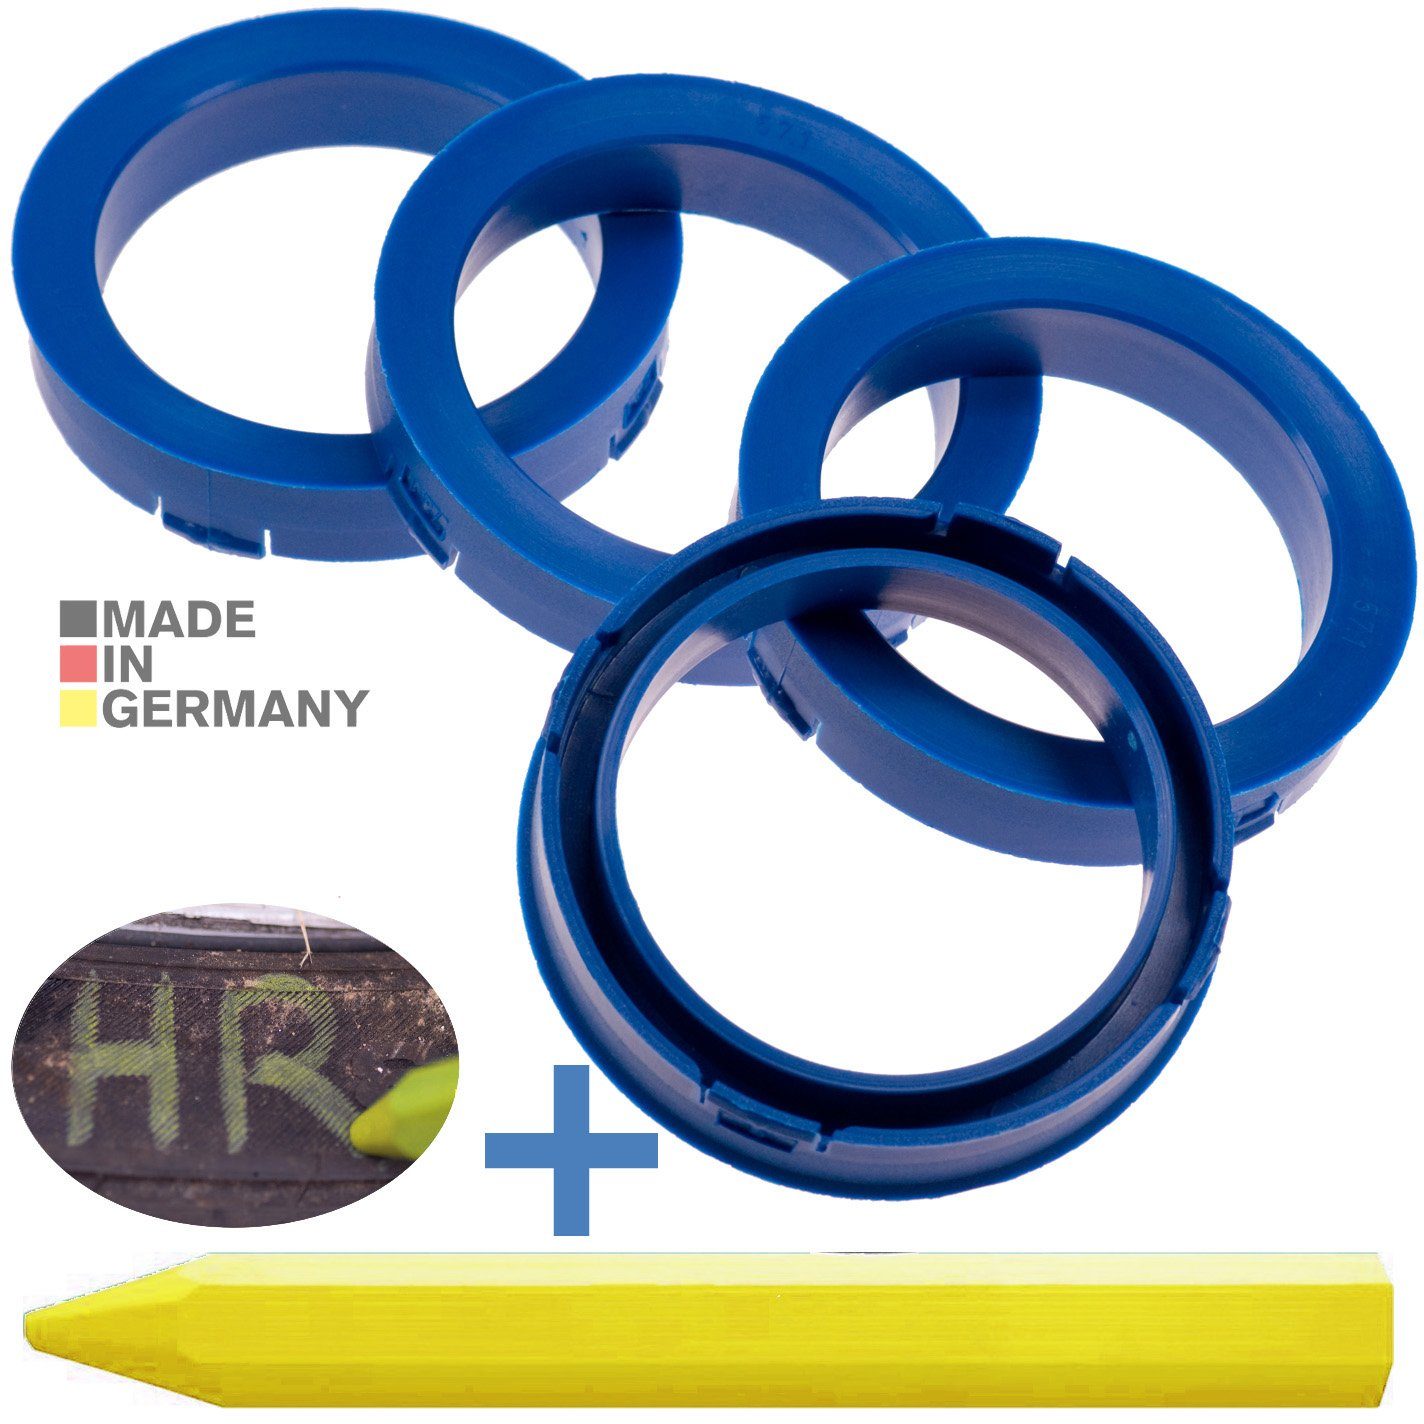 73,1 Fett Kreide RKC Stift, Reifen Maße: Ringe Felgen mm Reifenstift 57,1 1x 4X + Zentrierringe x Blau